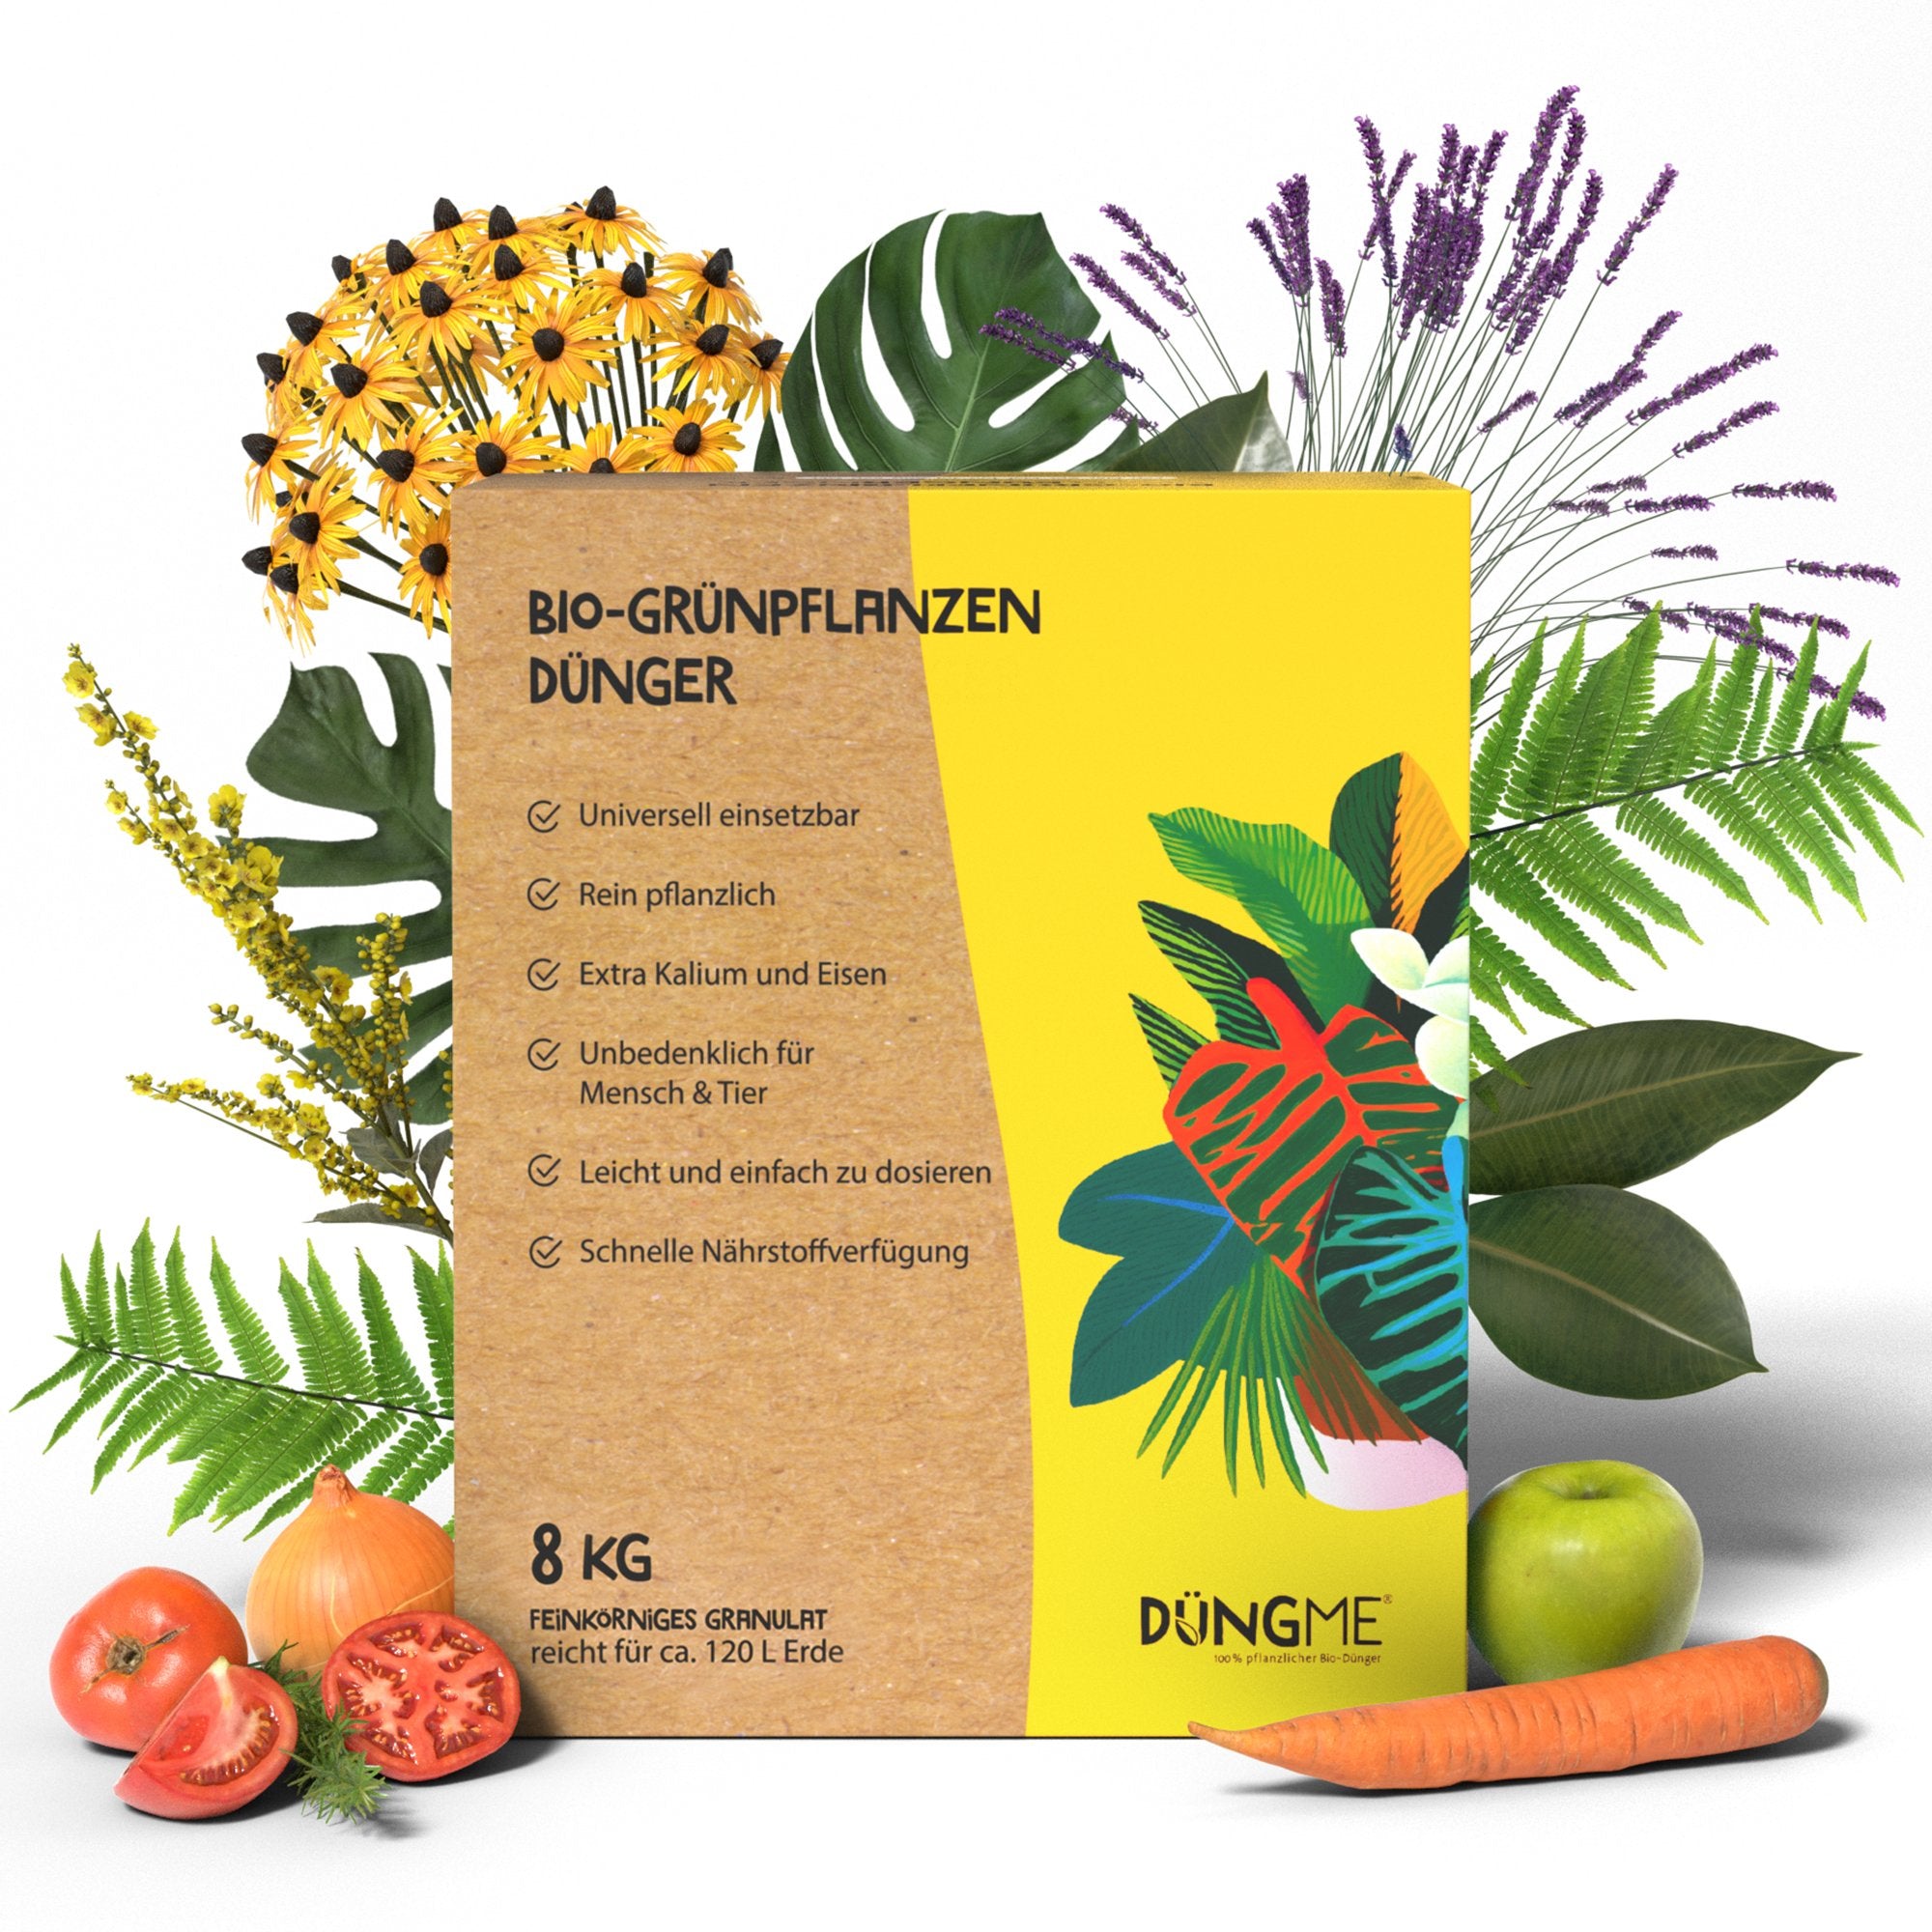 Bio-Grünpflanzendünger - 8 kg